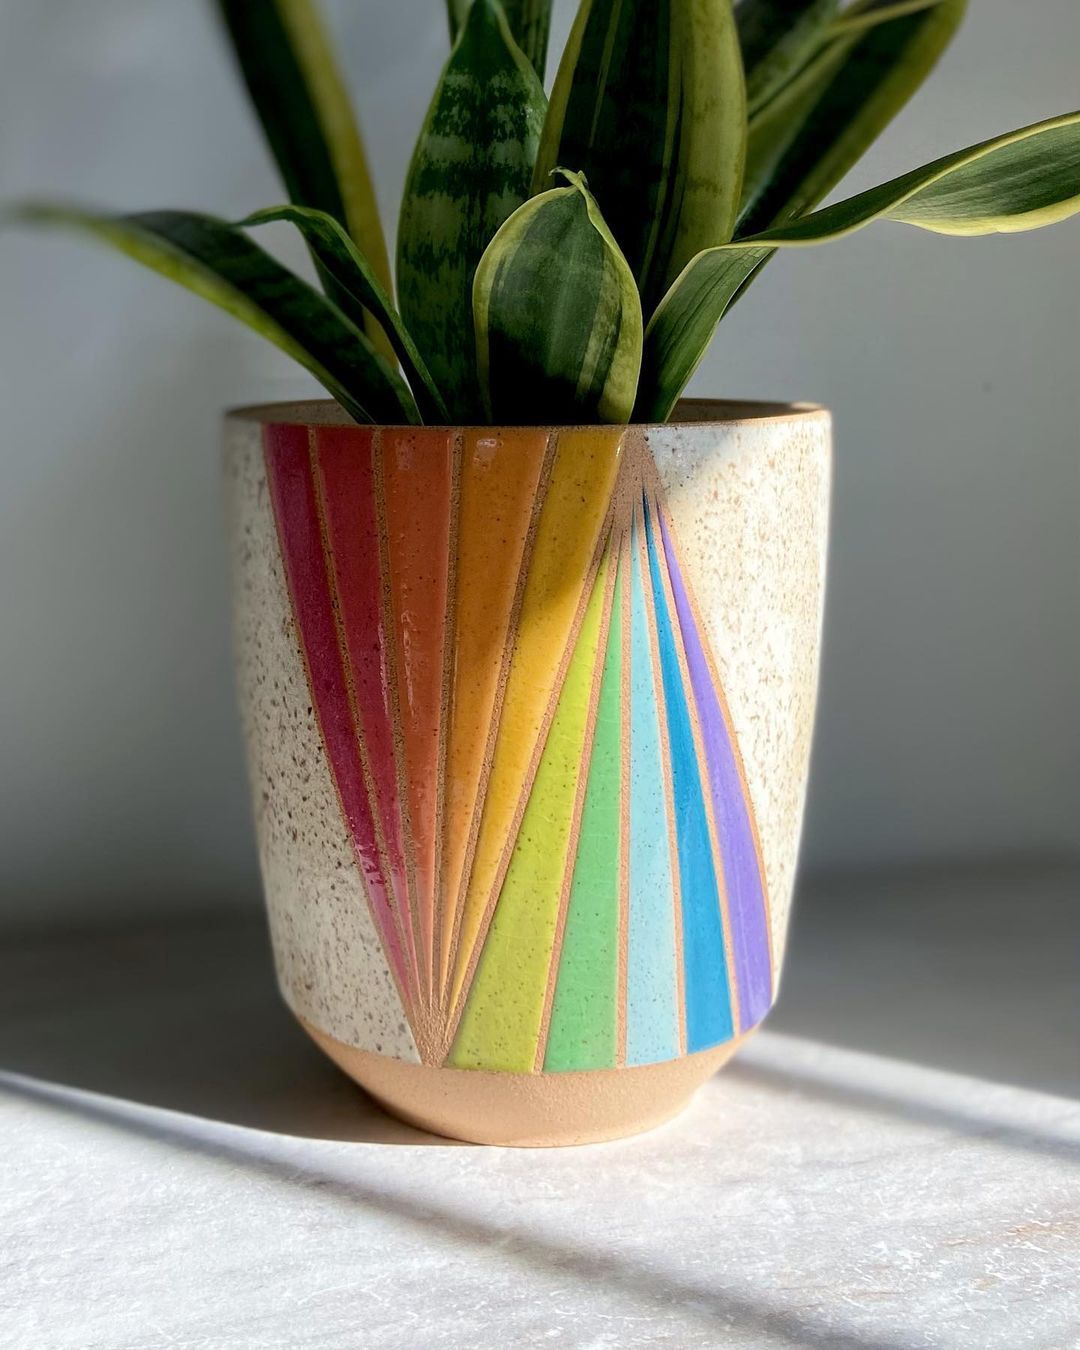 Rainbow Ceramics Gorgeous Multicolored Ceramic Pieces By Christine Tenenholtz (16)